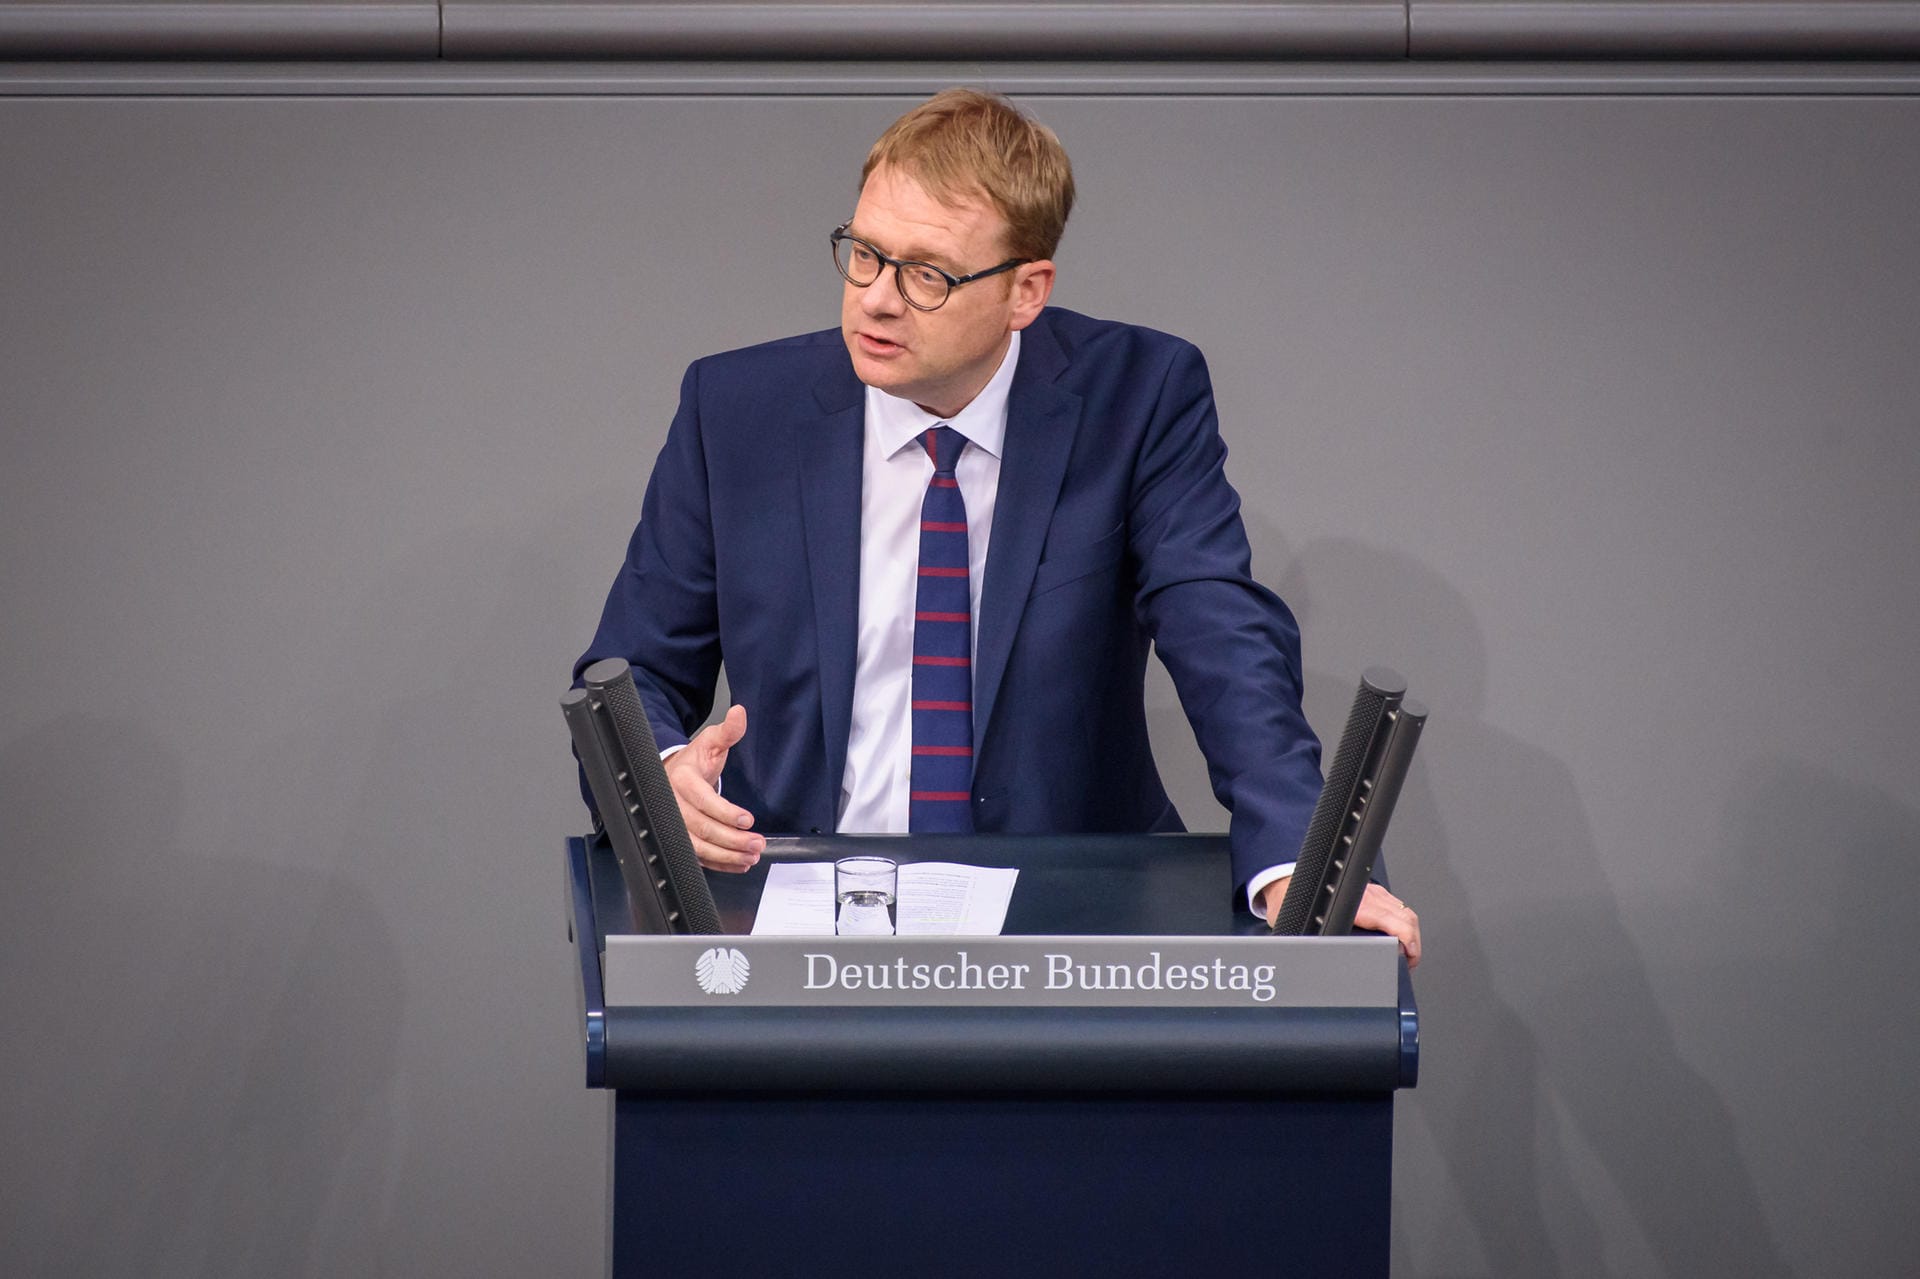 Der CDU-Bundestagsabgeordnete und Parlamentarische Staatssekretär im Gesundheitsministerium, Thomas Gebhart, schrieb auf Twitter: "Die Wahl ist eine Entscheidung für einen strammen Linkskurs der SPD. Ich vermute, dass die SPD-Führung jetzt linke Forderungen aufstellen wird, die selbst innerhalb der SPD umstritten sein dürften."